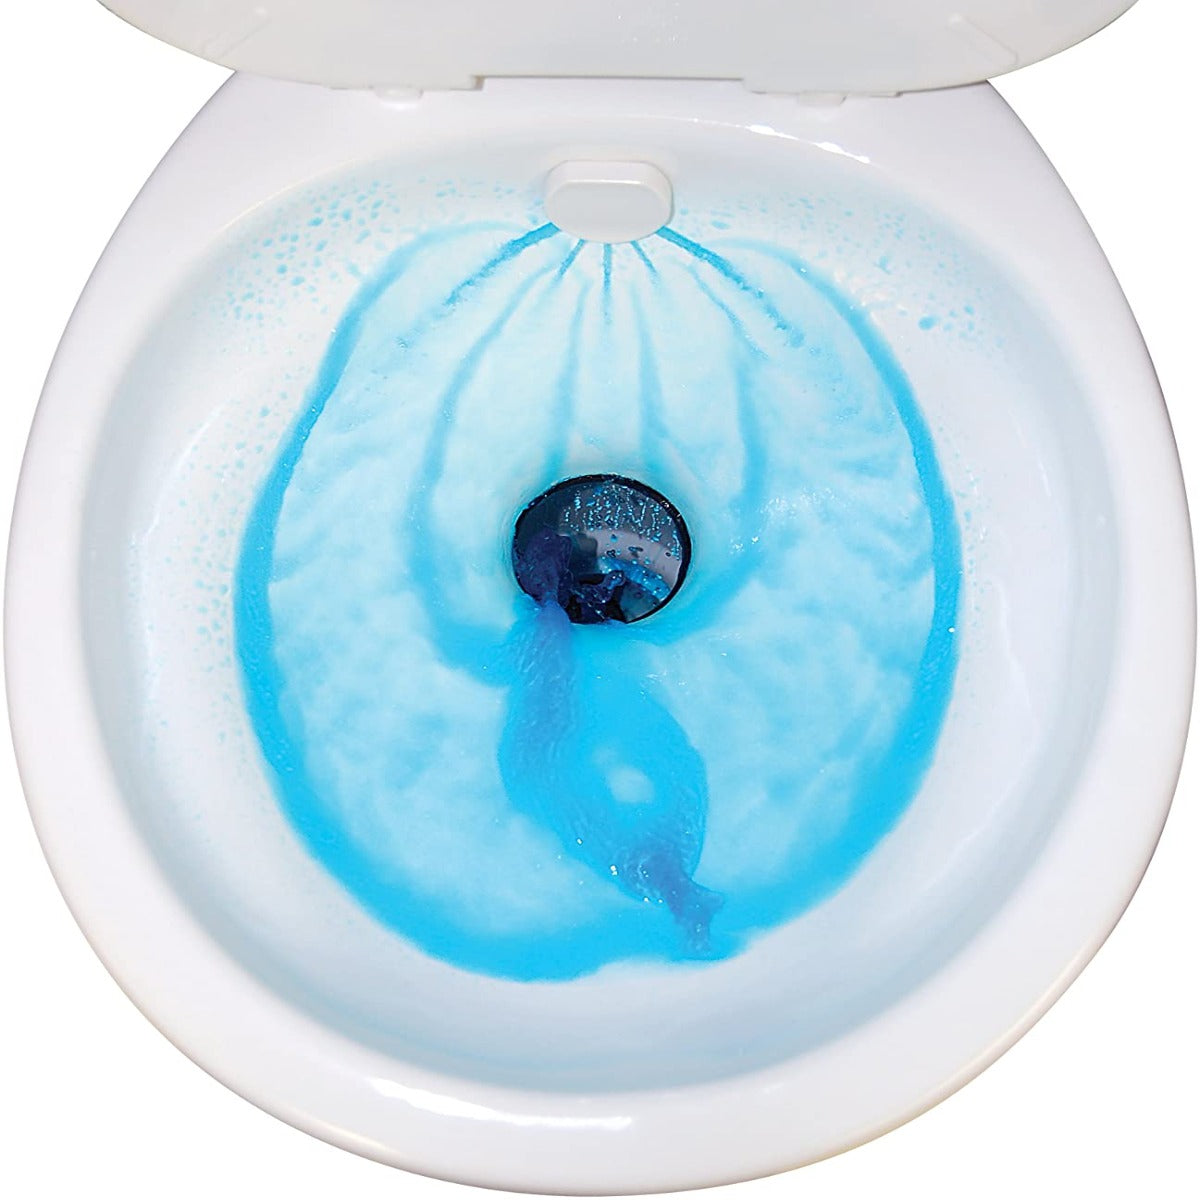 Thetford 42060 Aqua-Magic® Style™ II China Toilet, High Profile, White w/Sprayer